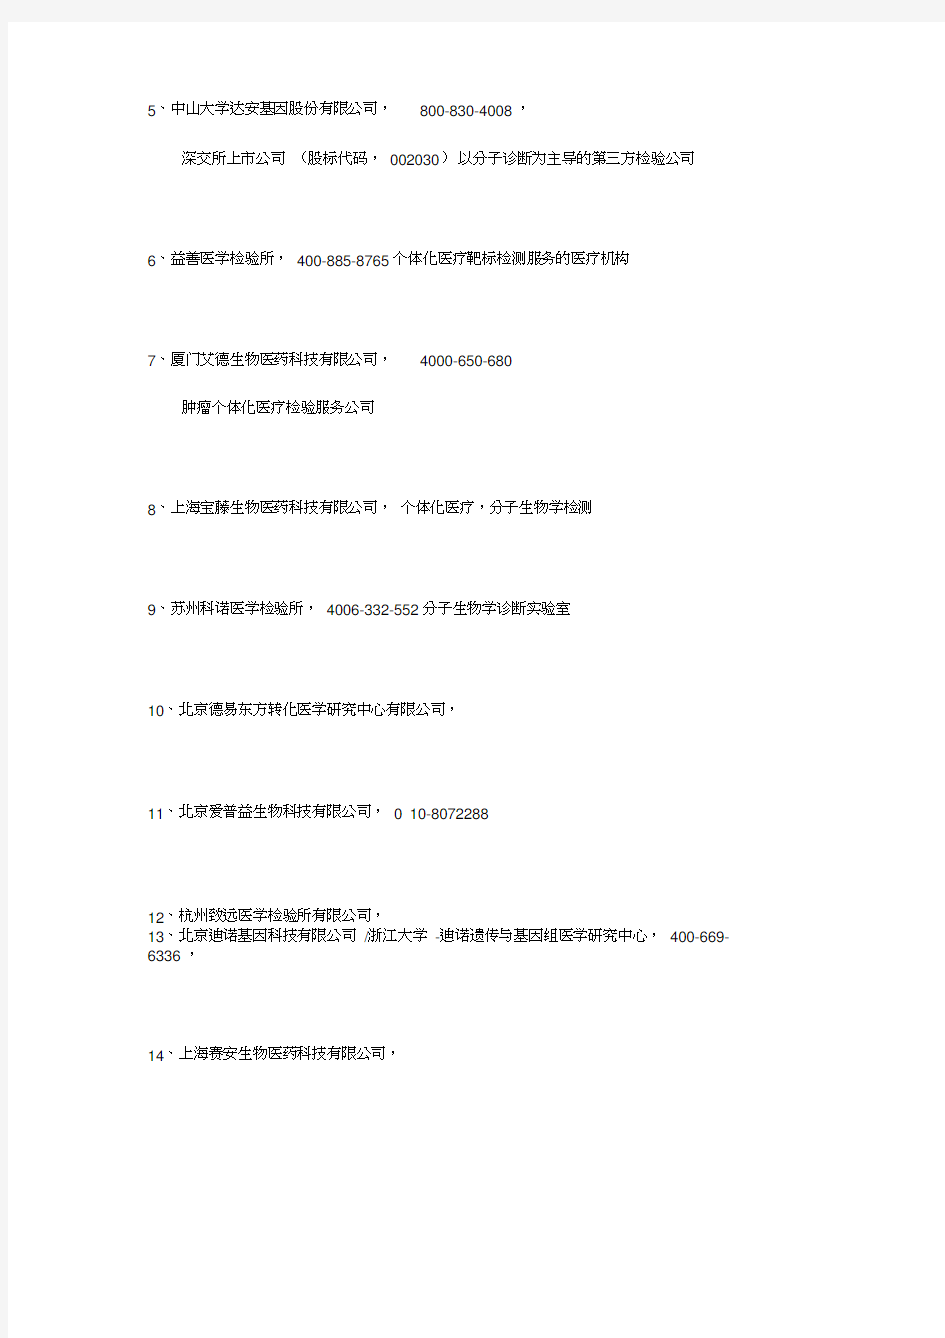 中国第三方临床检验公司名单